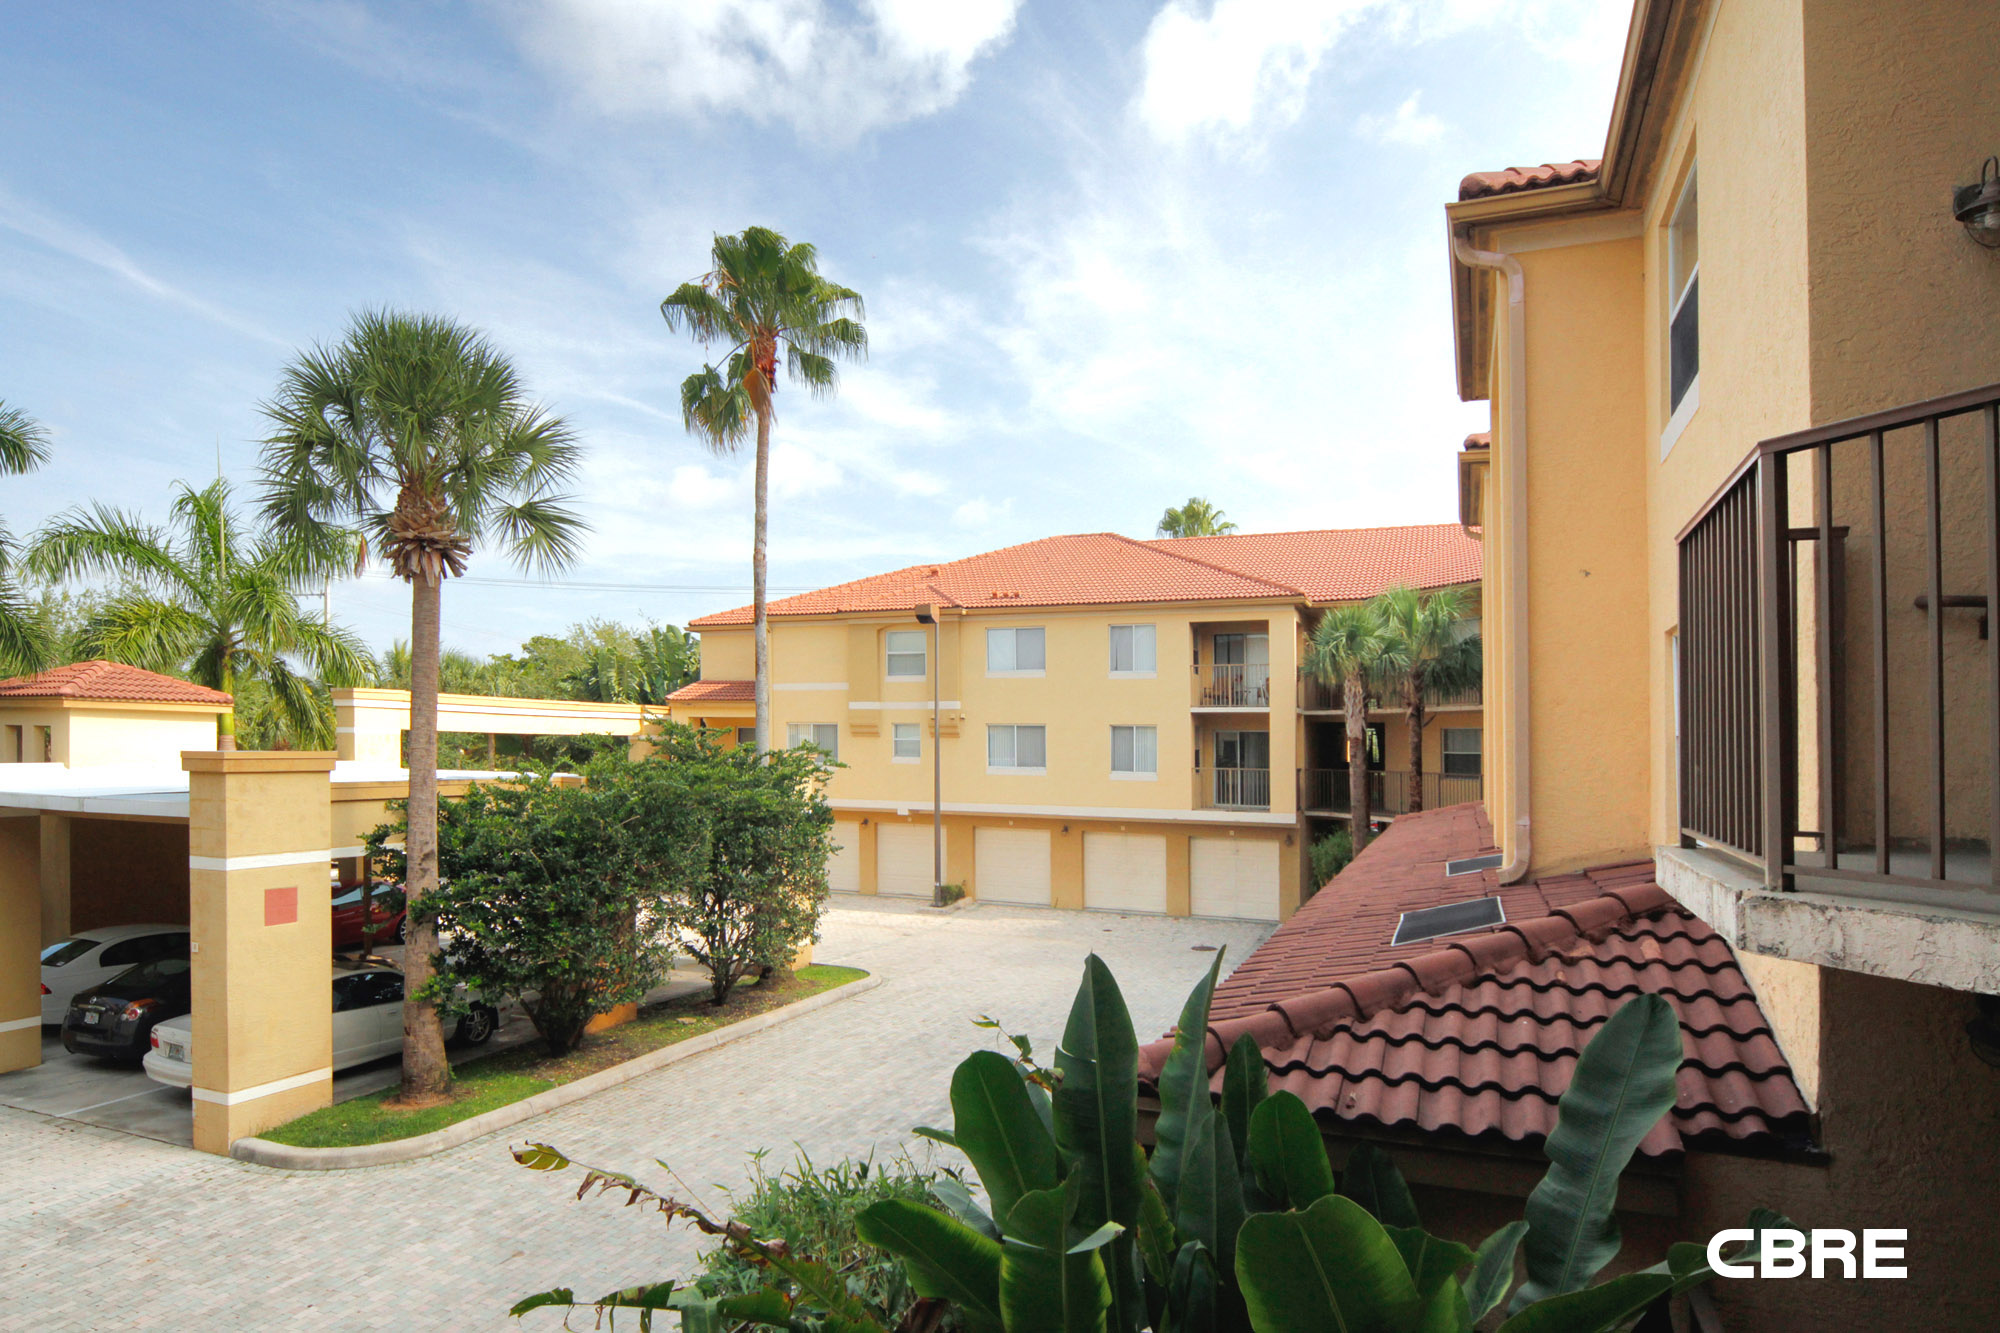 South Florida homes valued at $717B.